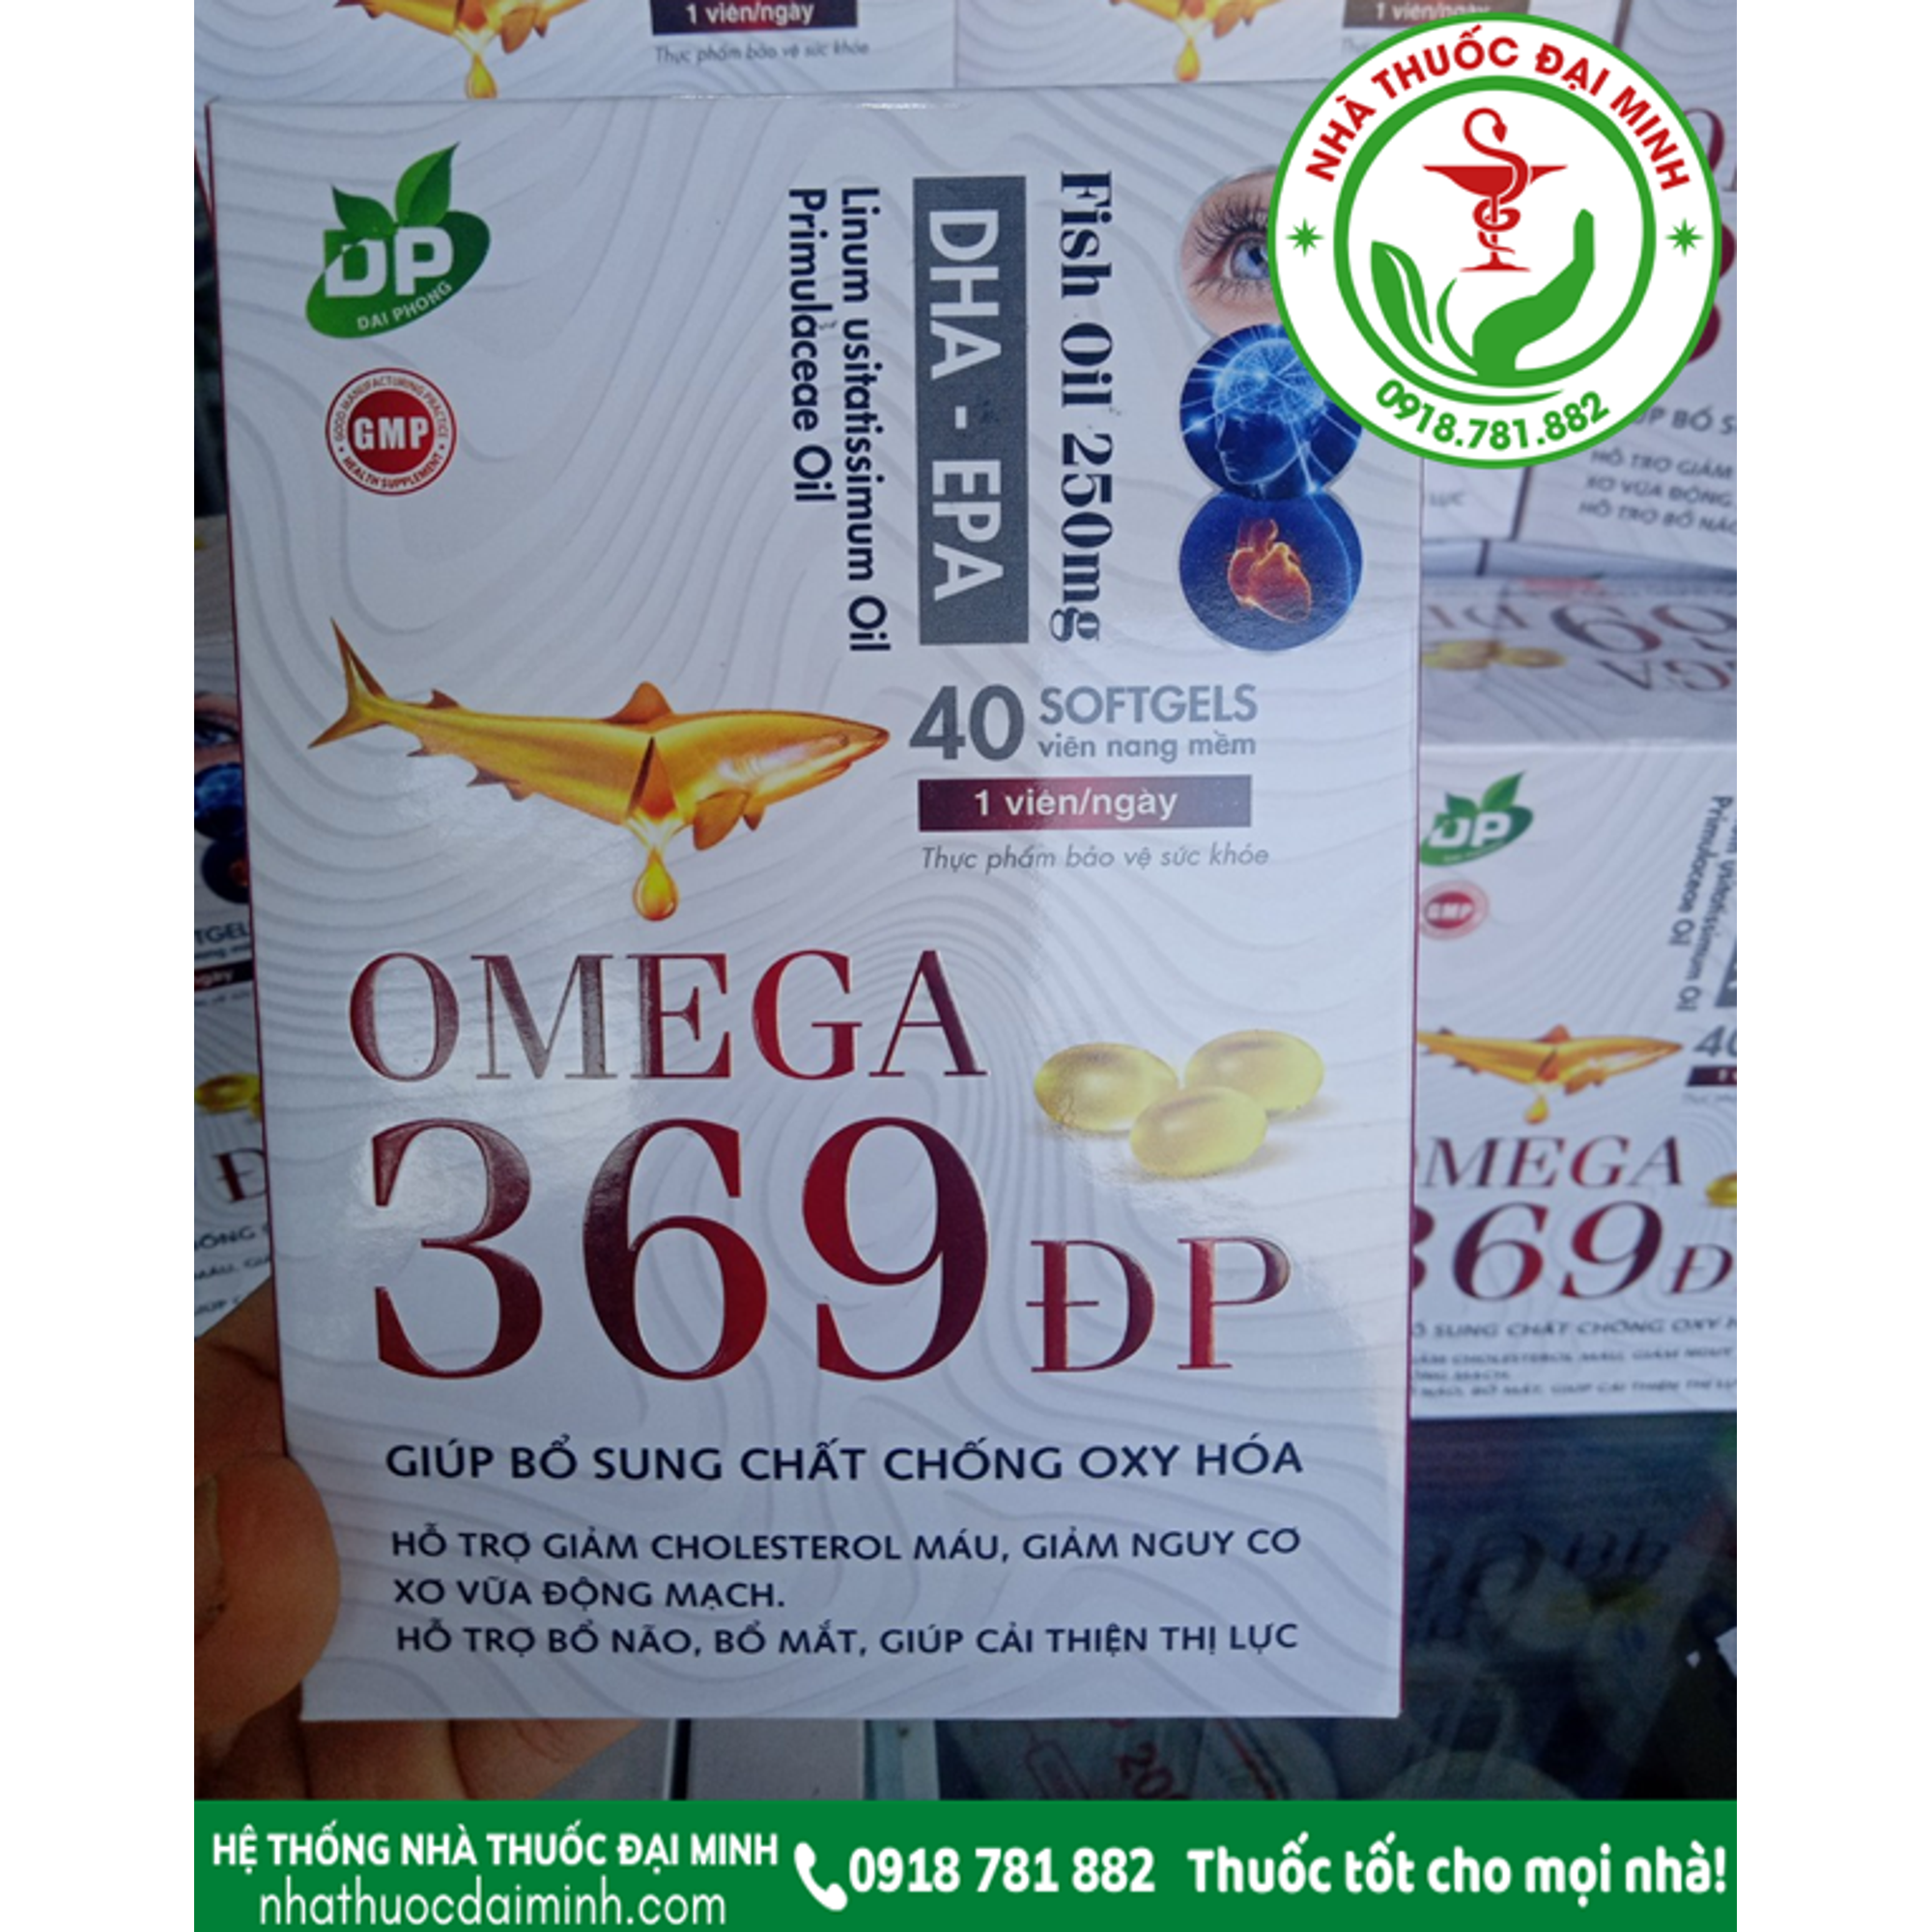 omega 369 đp